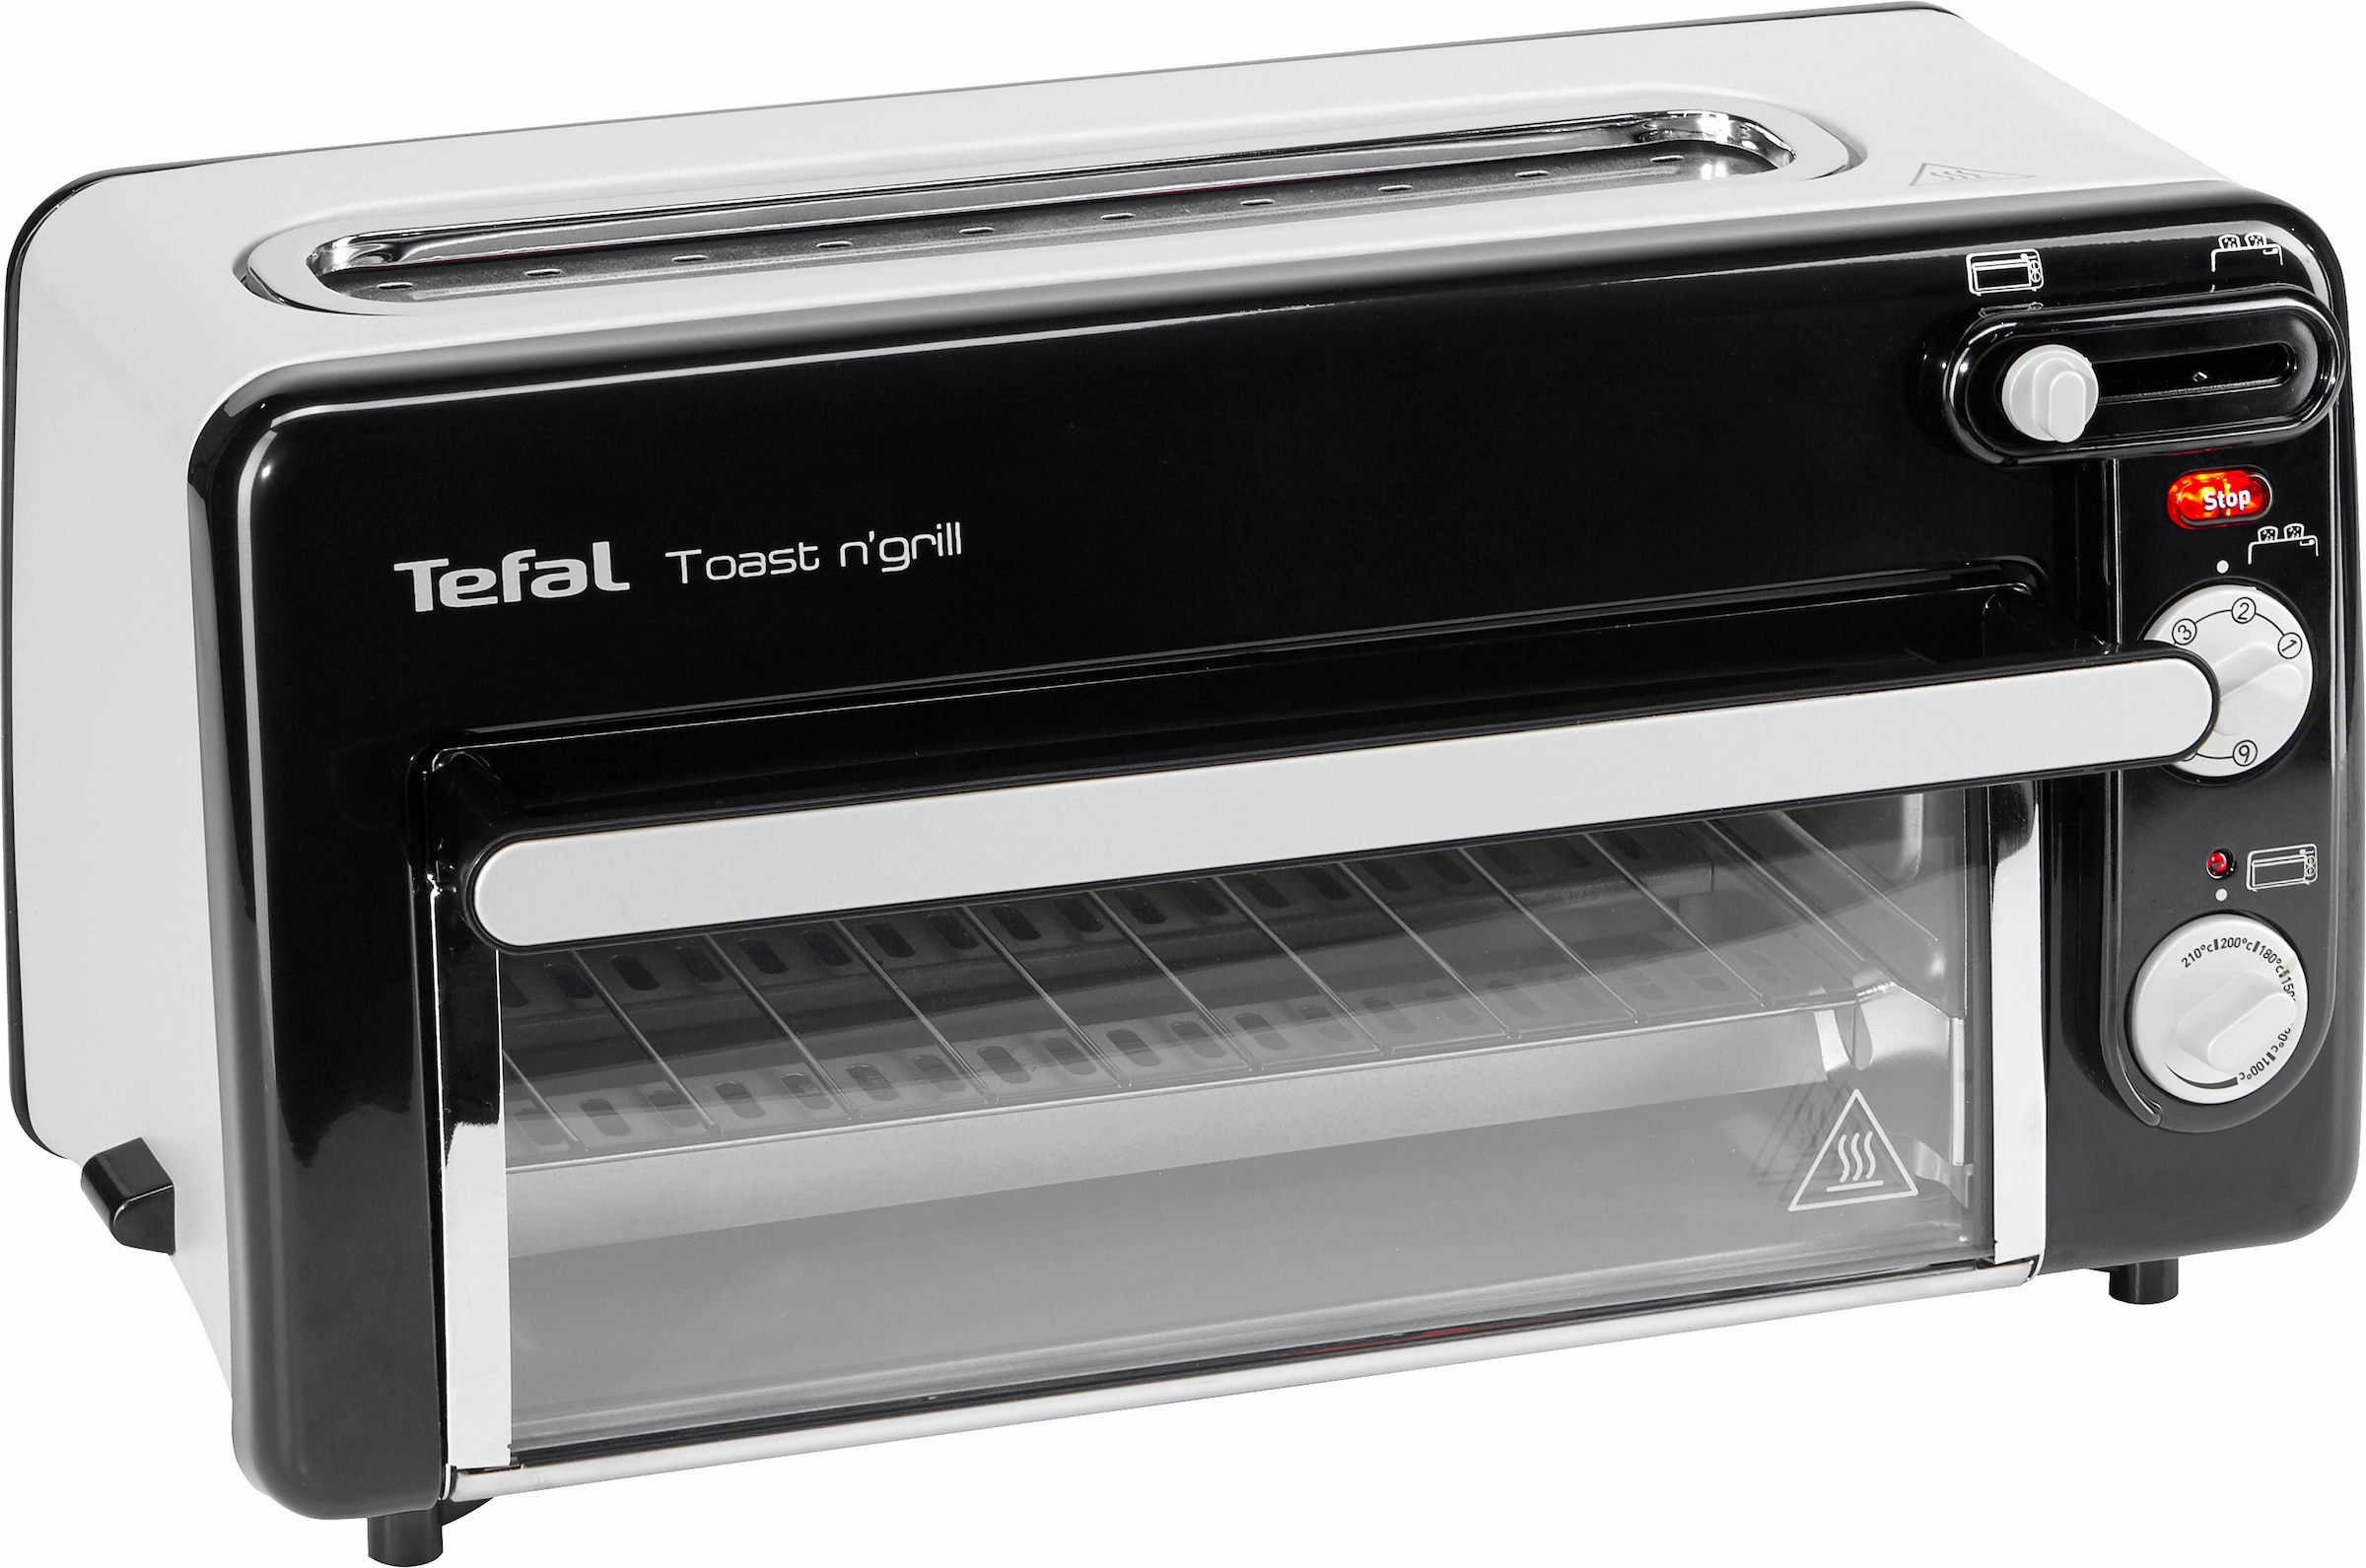 mit Watt 1300 Grill«, energieeffizient Tefal schnell, Toast sehr 3 Minibackofen Garantie n\' XXL »TL6008 und Jahren